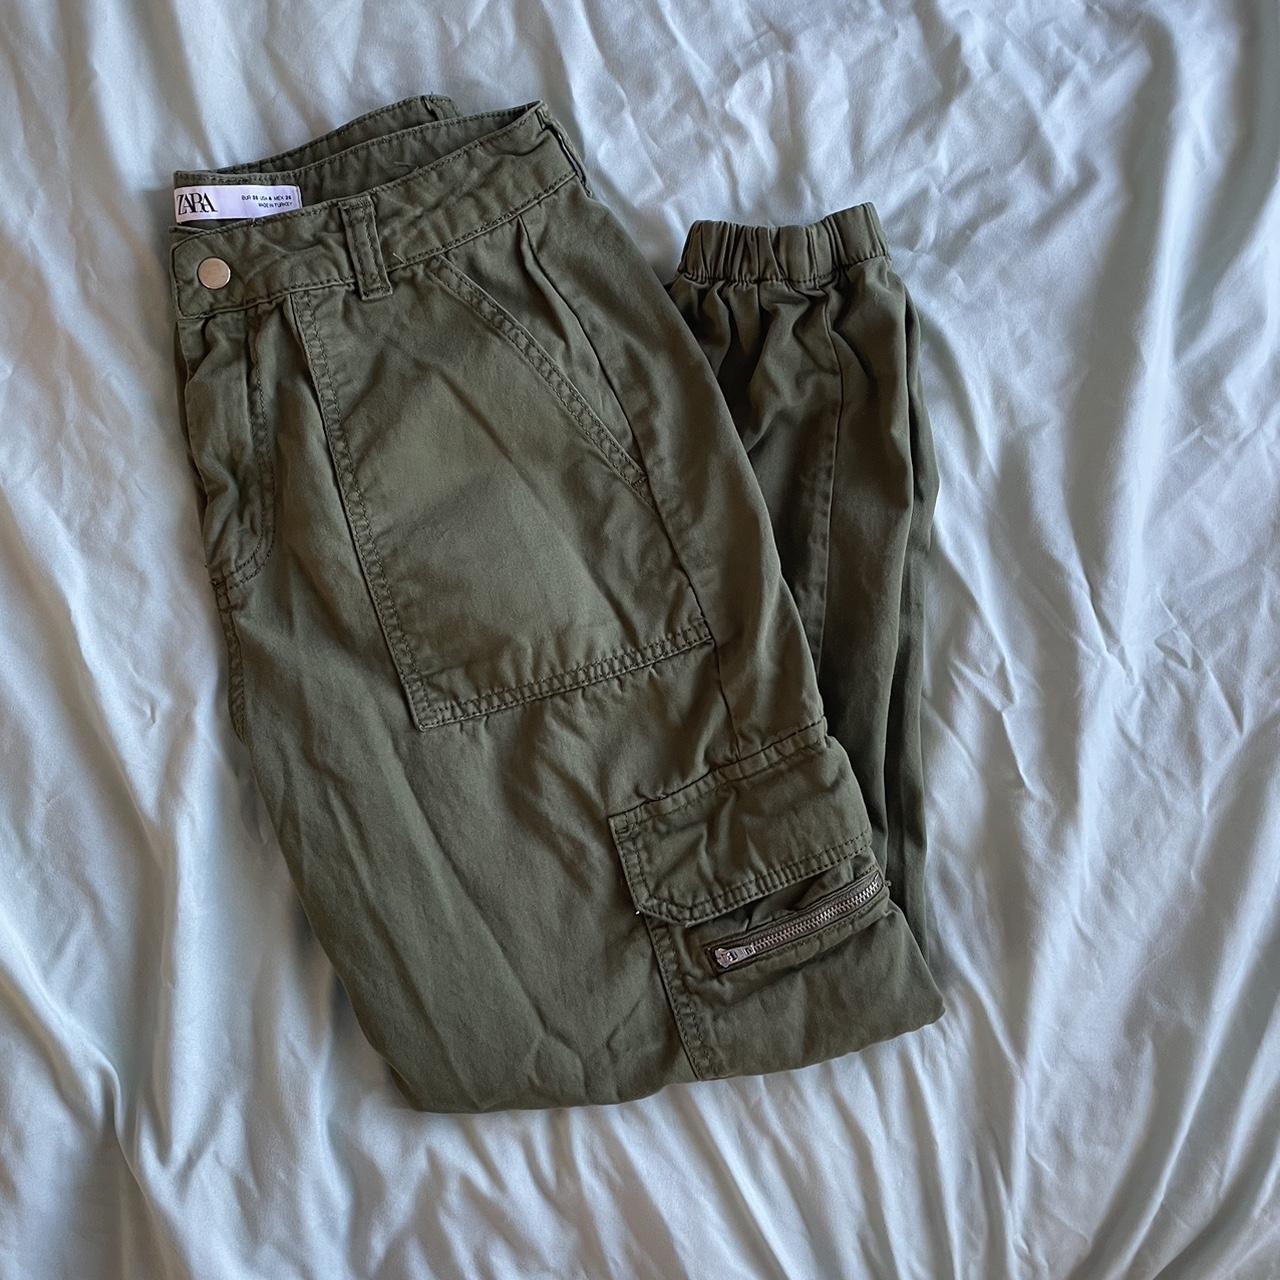 Zara green high waisted cargo pants size 4 - Depop